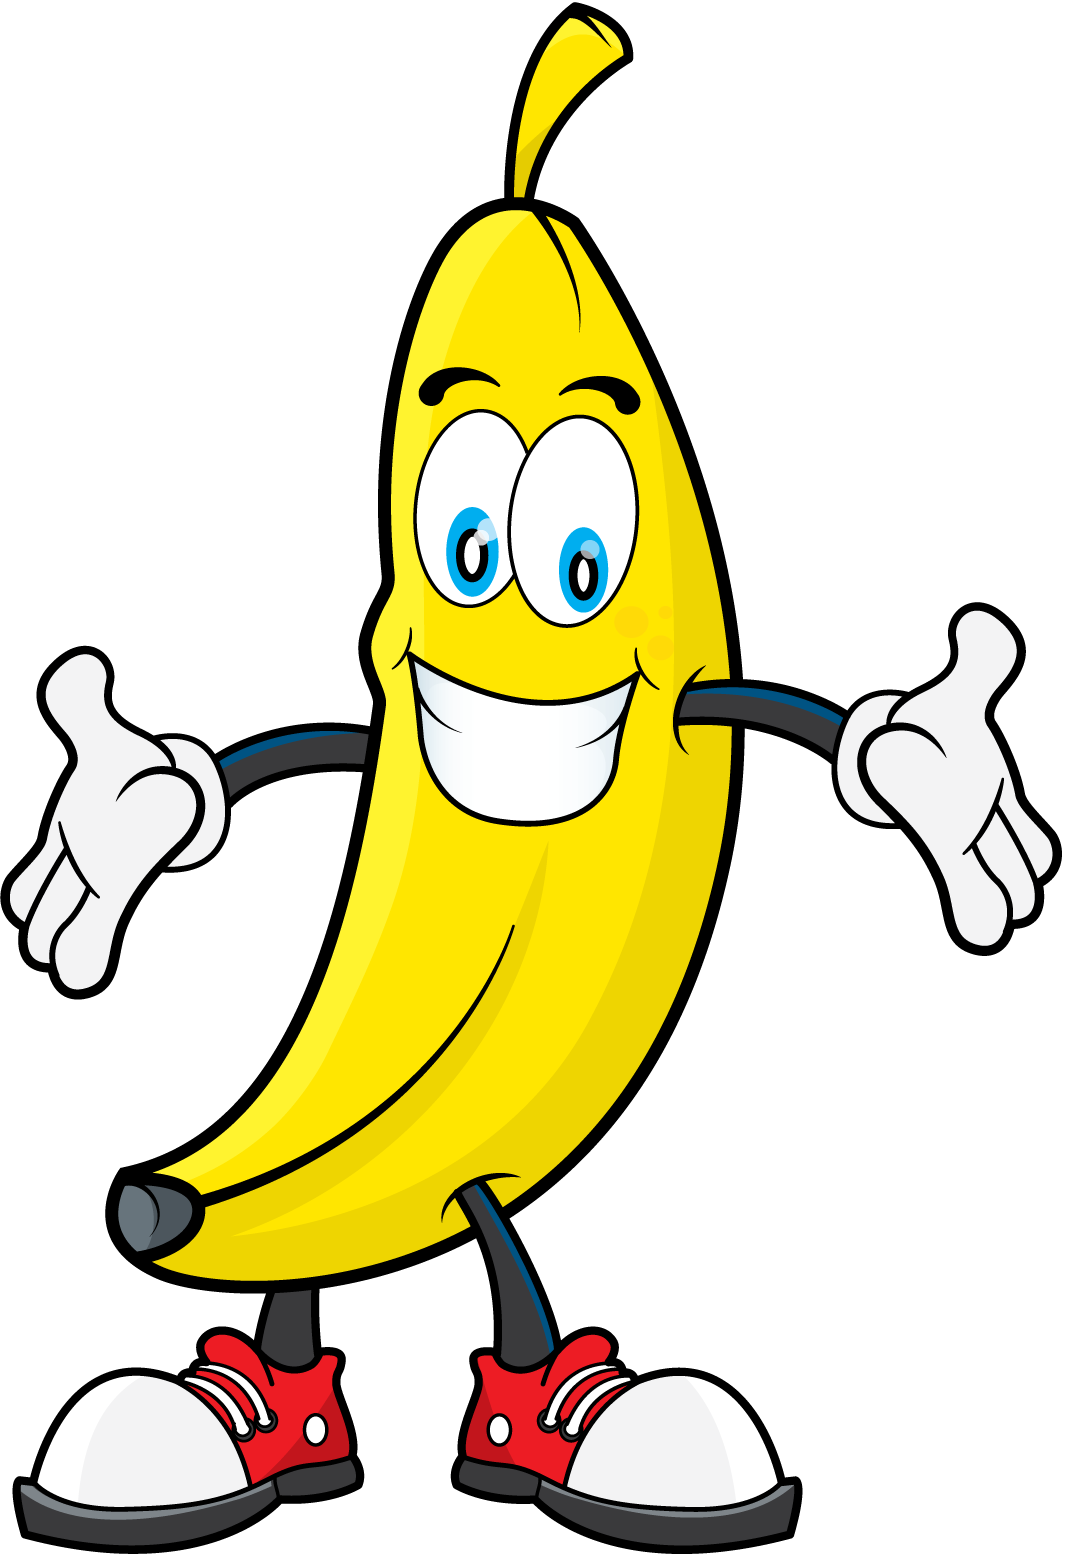 Free topbanana bananaclipart anything. Clipart banana car cartoon